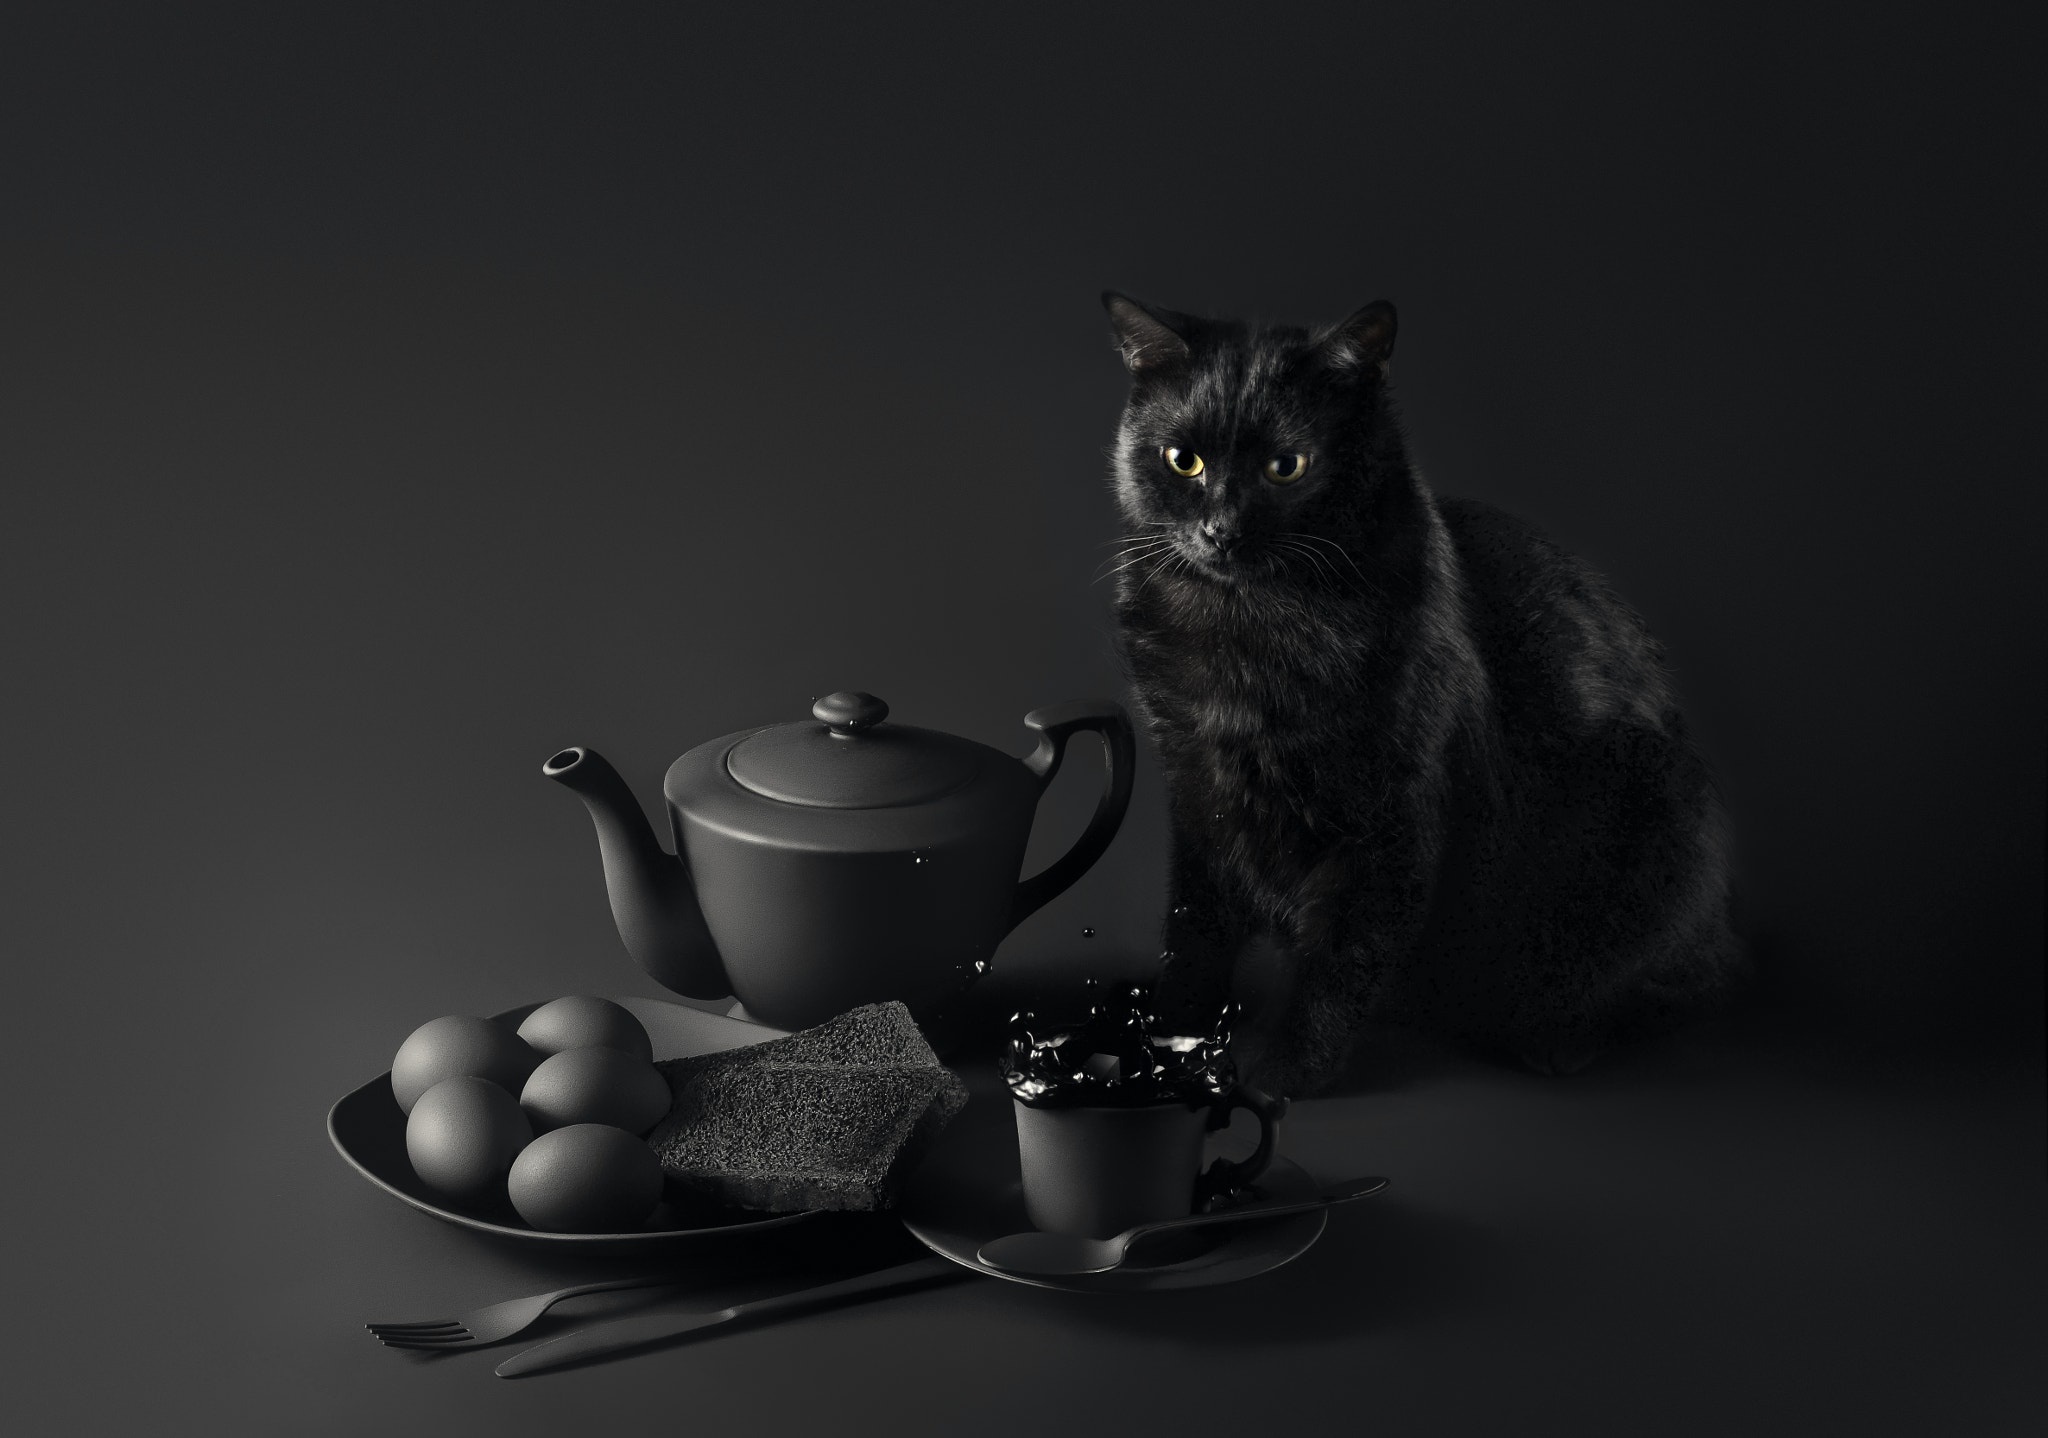 436486 descargar imagen animales, gato, blanco y negro, taza, tetera, gatos: fondos de pantalla y protectores de pantalla gratis